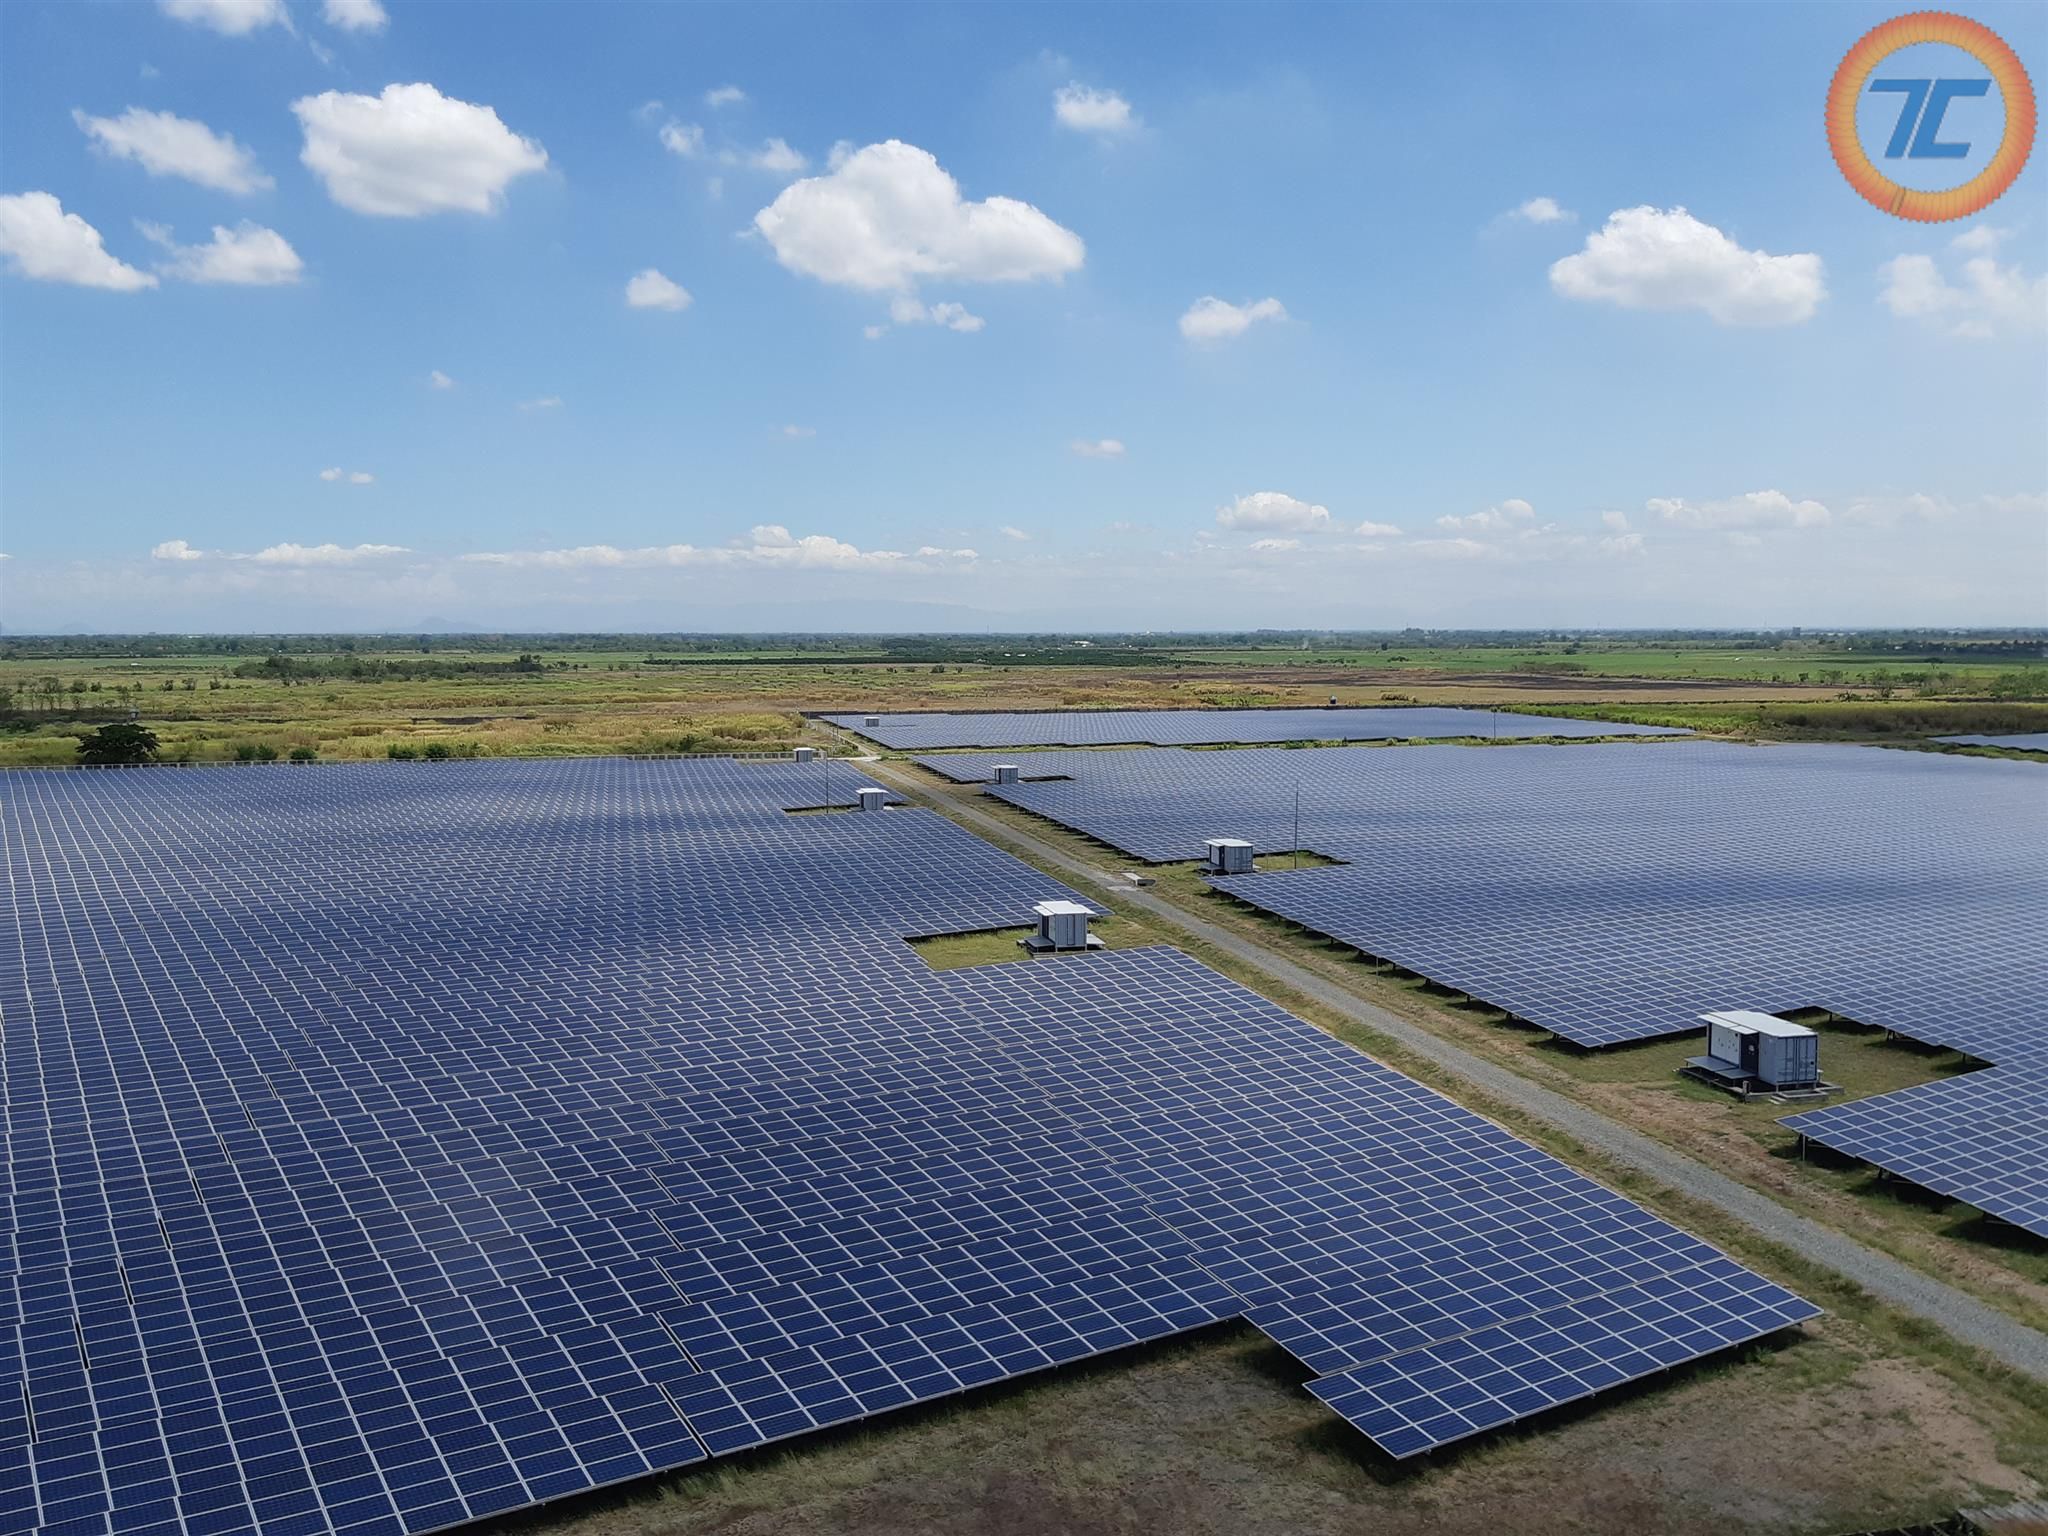 Tìm hiểu dự án nhà máy điện mặt trời BP Solar Tỉnh Ninh Thuận